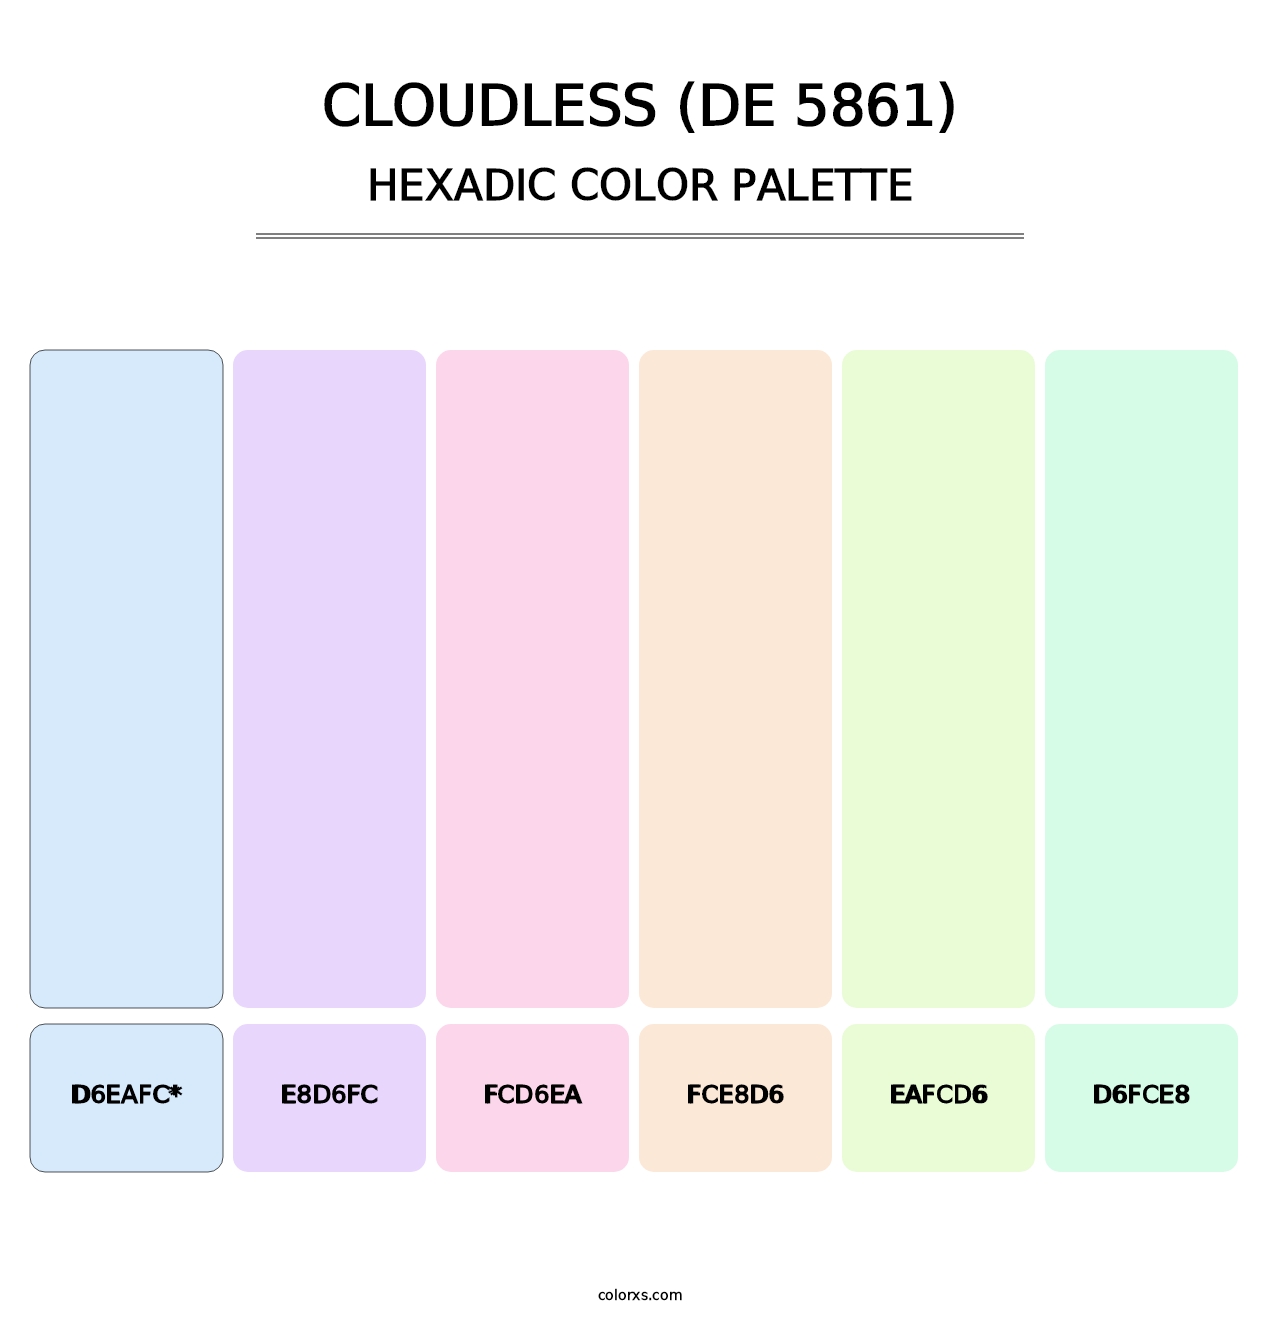 Cloudless (DE 5861) - Hexadic Color Palette